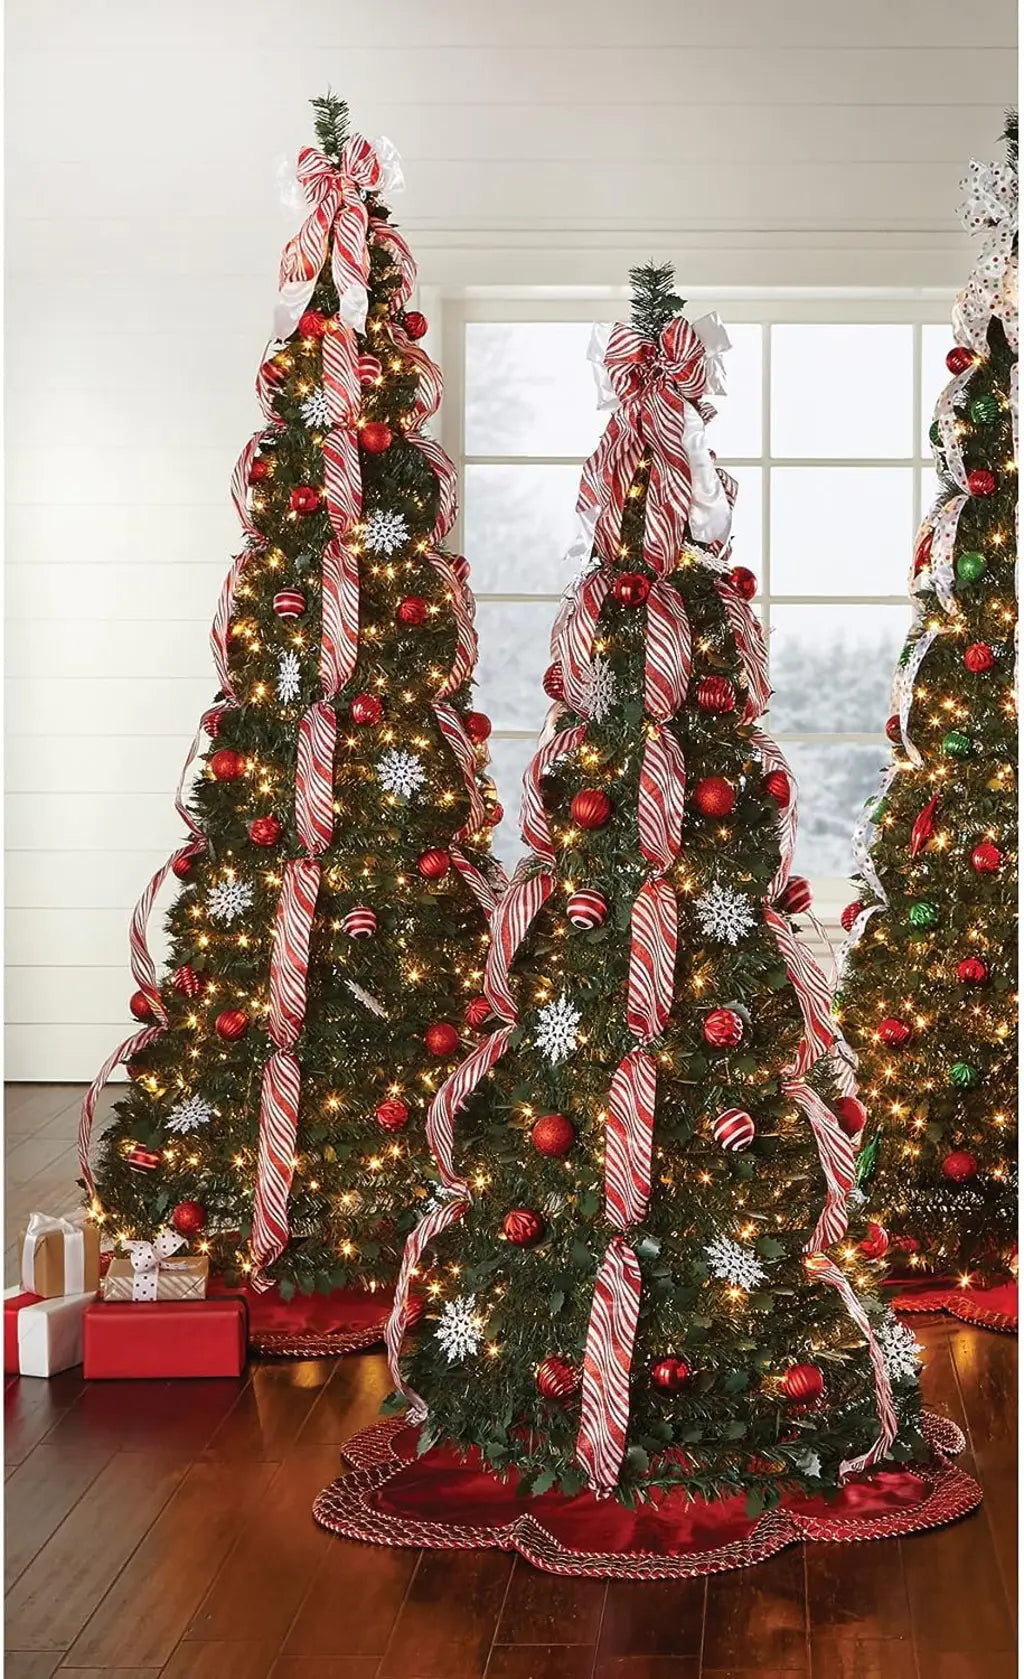 Albero di Natale pop-up con luci e decorazioni 🎄 Albero di Natale pieghevole illuminato 🎄 Albero di Natale pre-decorato e illuminato